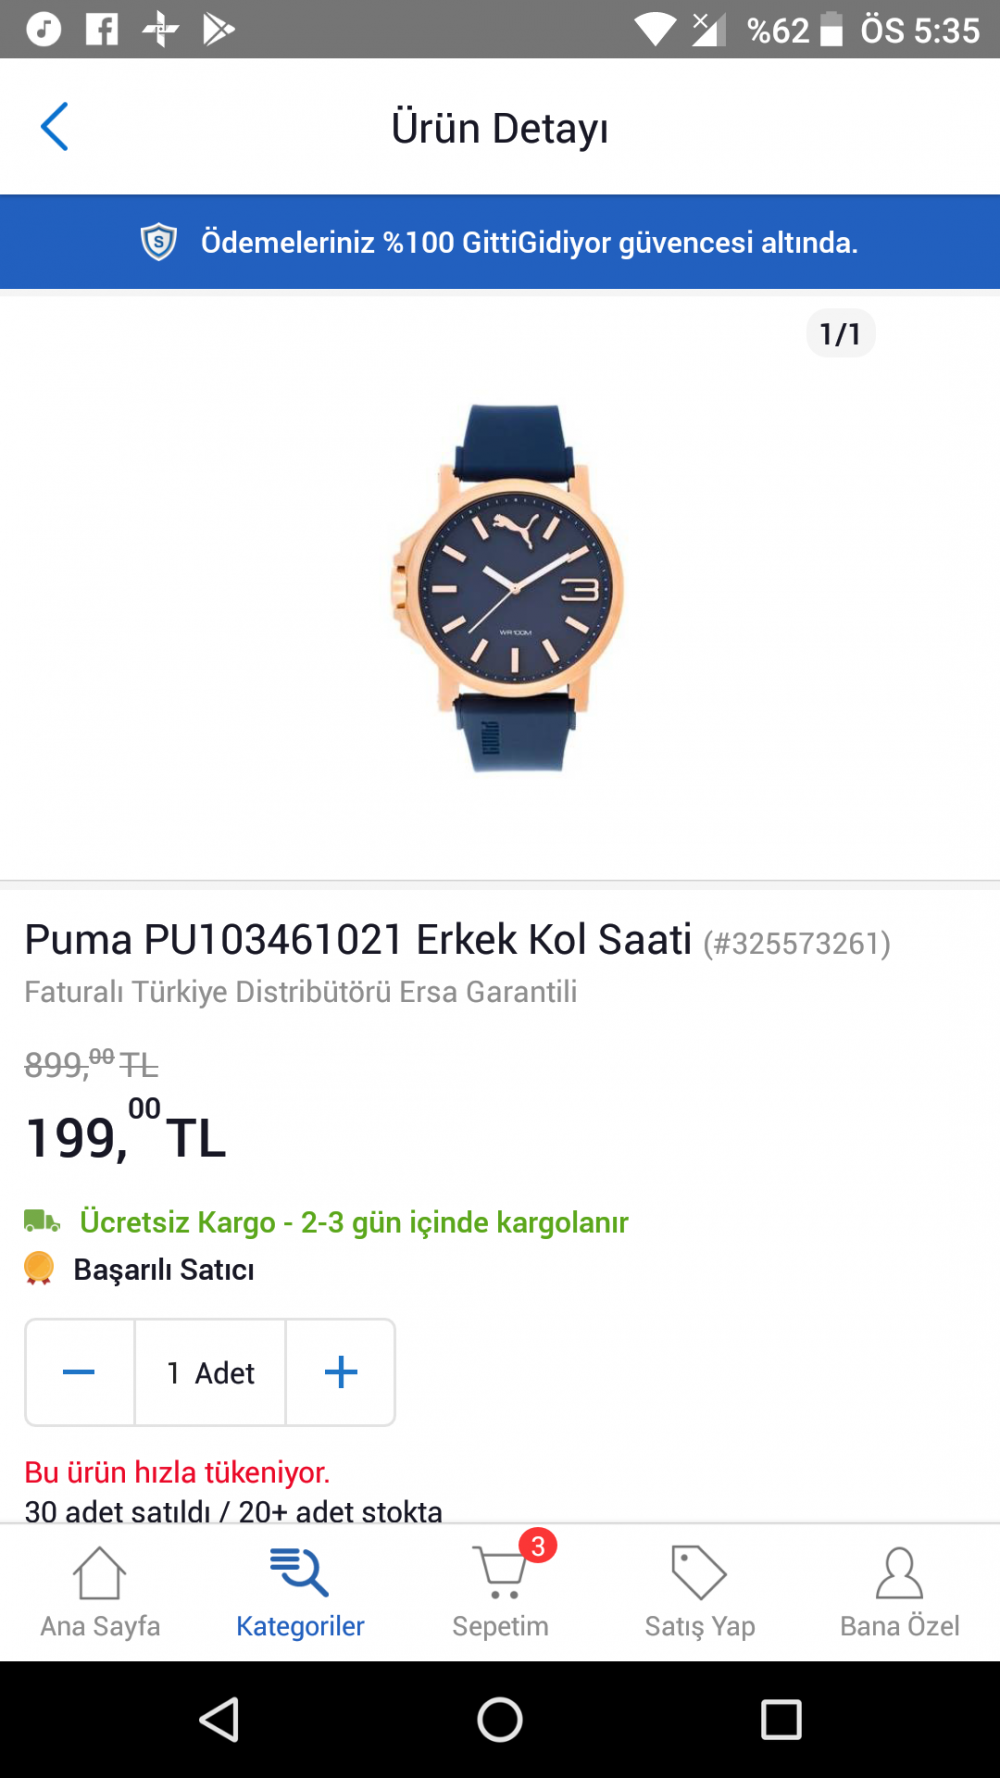 Yeni saatim guzelmi fiyatına göre?